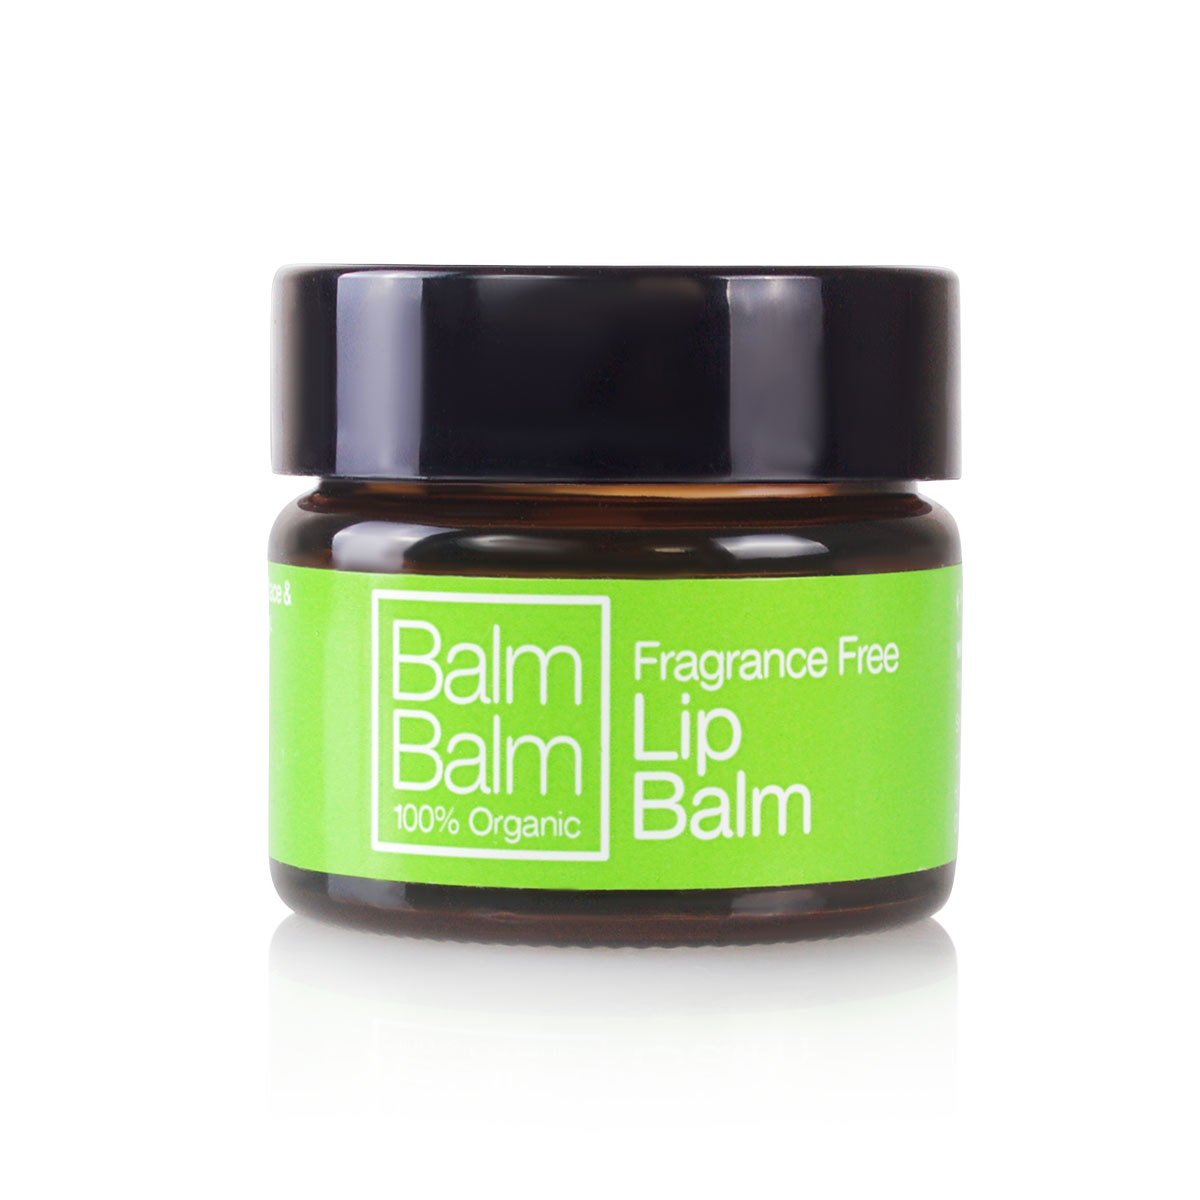 Balm-Balm-lip-balm-fragrance-free